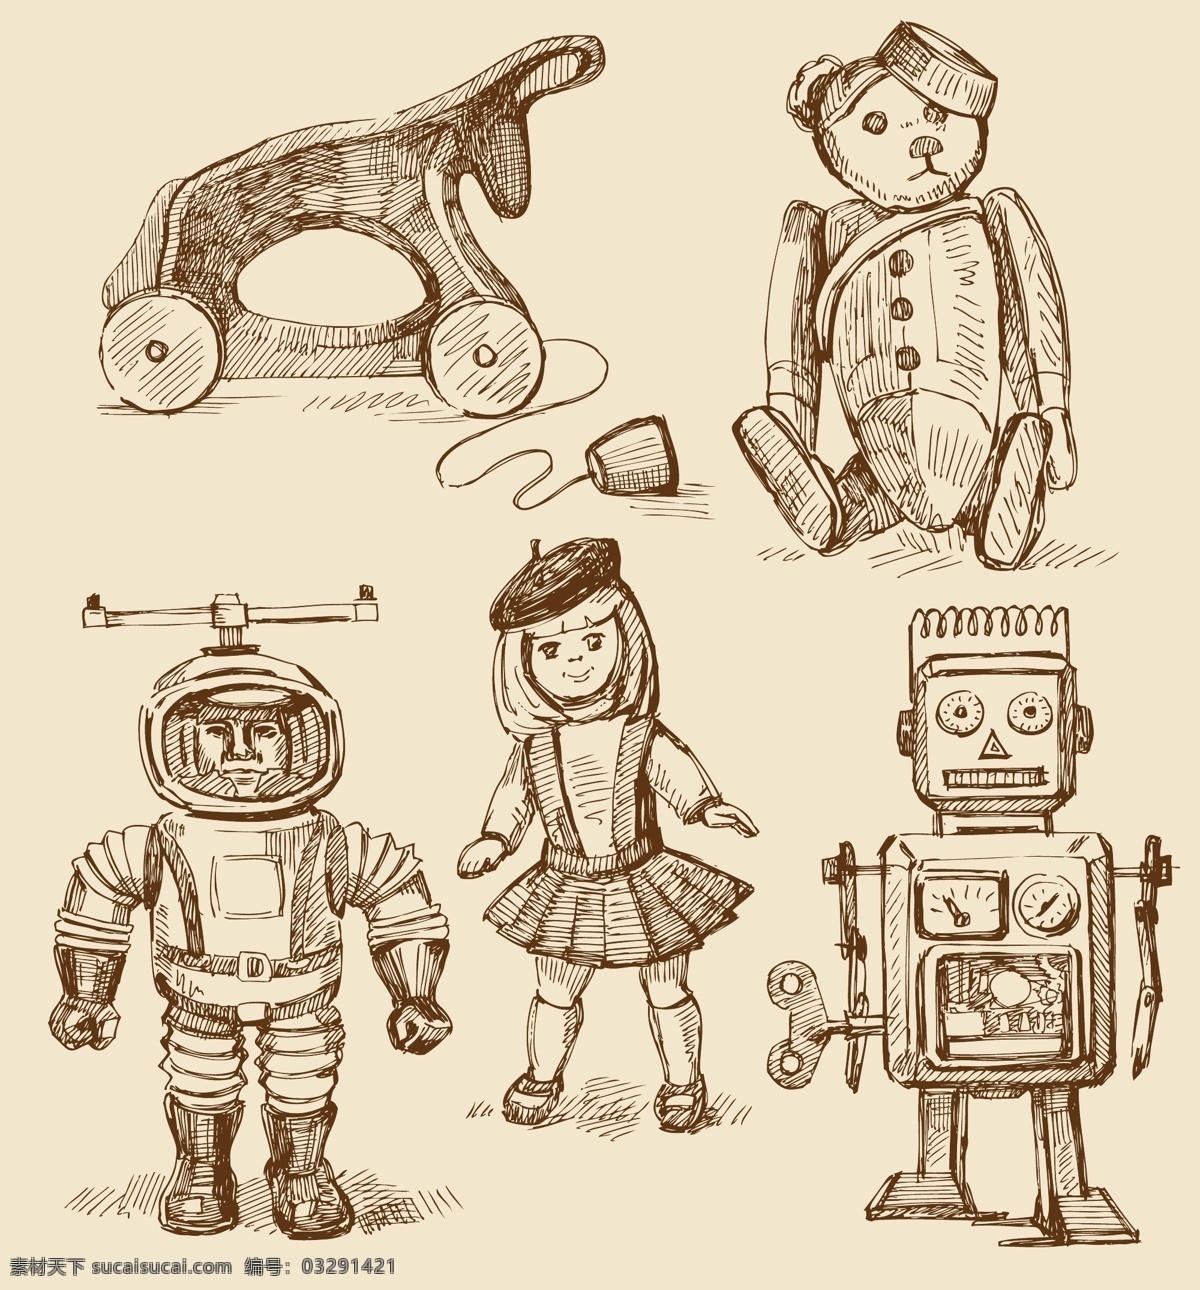 手绘 娃娃 木马 小熊 宇航员 机器人娃娃 矢量图 日常生活